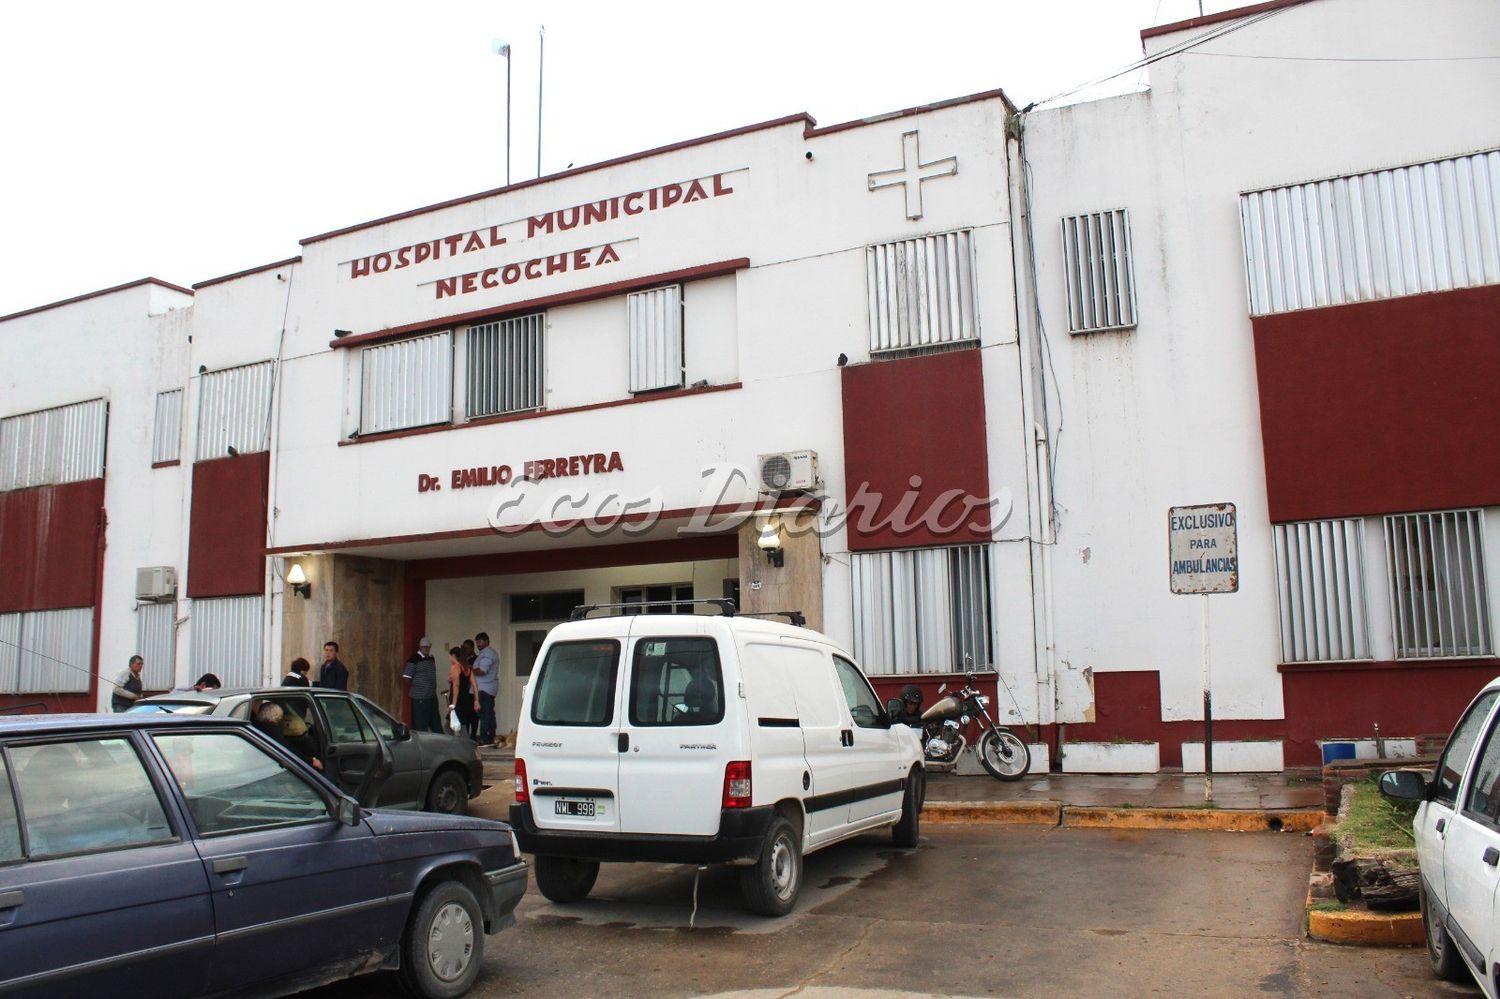 Hospital Municipal Dr. Emilio Ferreyra